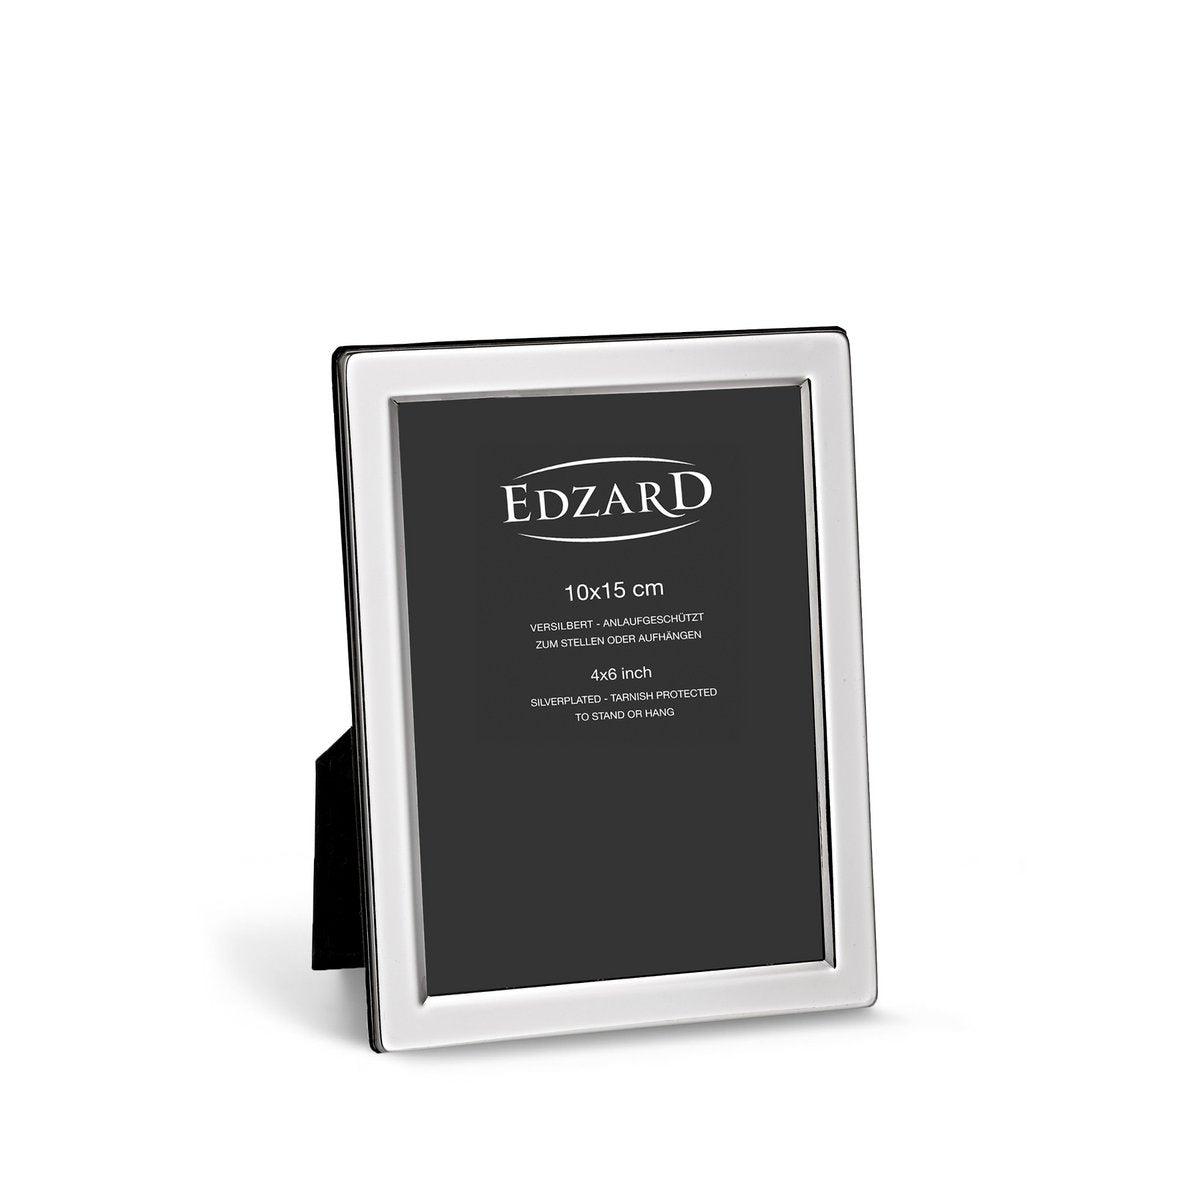 EDZARD Fotorahmen Salerno für Foto 10 x 15 cm, edel versilbert, anlaufgeschützt, mit 2 Aufhängern - HomeDesign Knaus